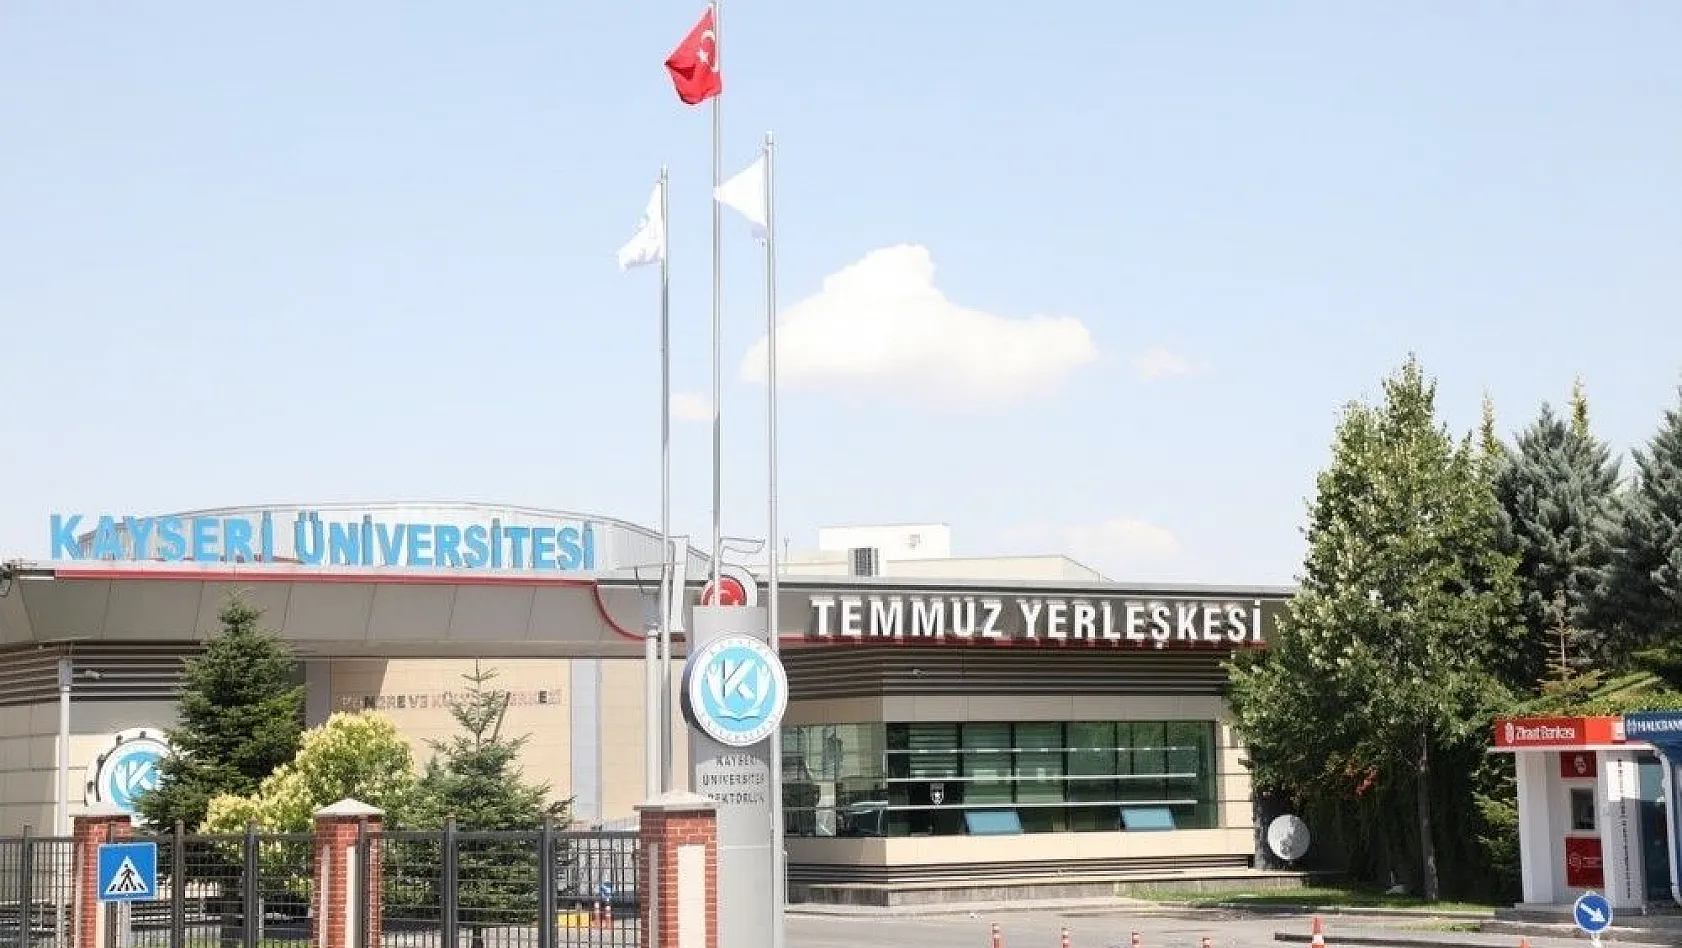 Kayseri Üniversitesi'ne Sağlık Bilimleri Fakültesi Kuruldu
